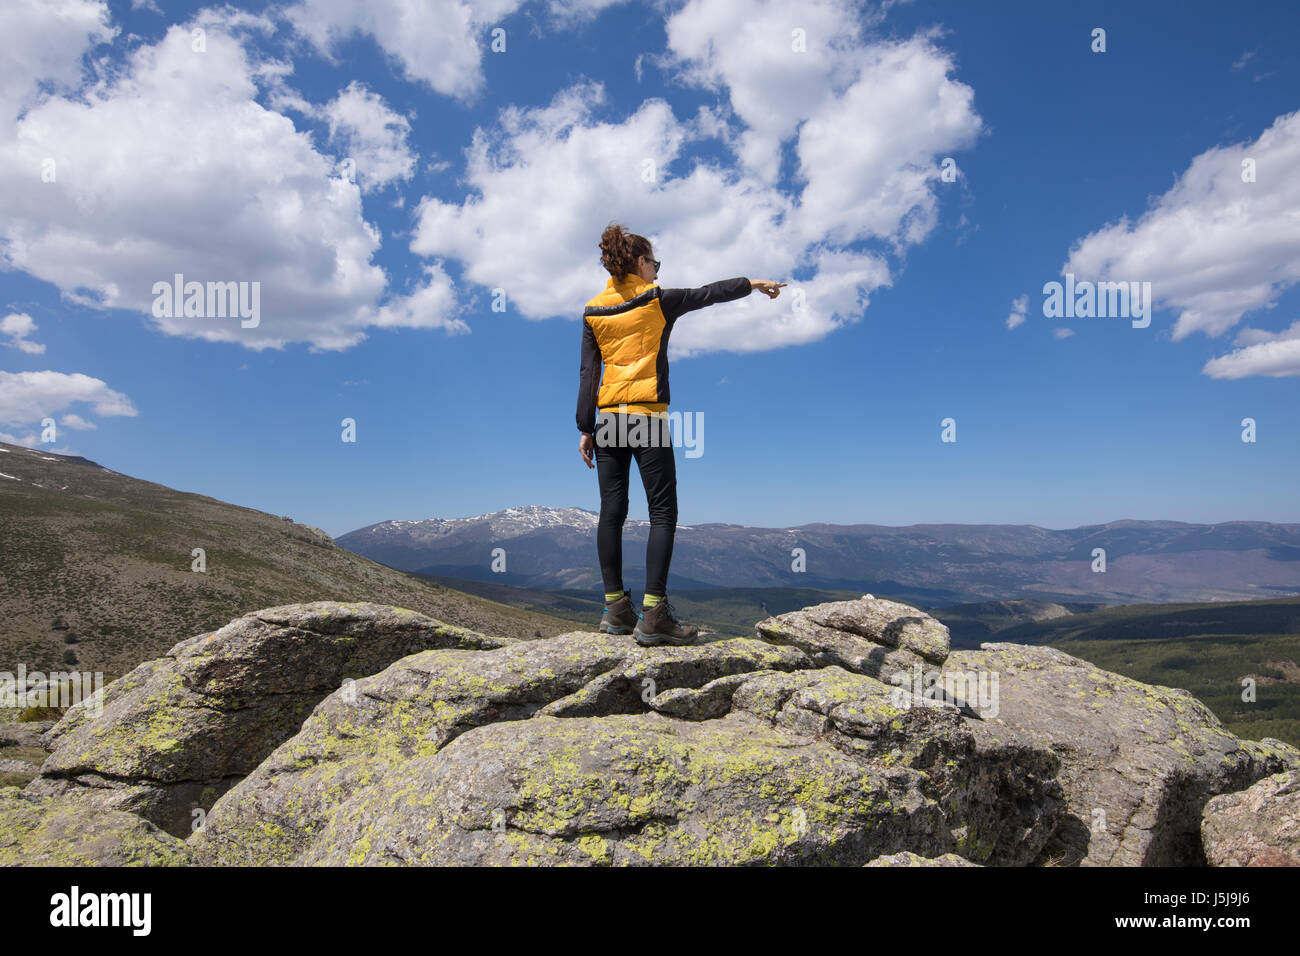 Deporte senderismo o trekking mujer con ropa de color amarillo y negro, de  pie sobre la roca, pico hacia arriba con la mano horizon en la distancia,  un valle de Lozoya Fotografía